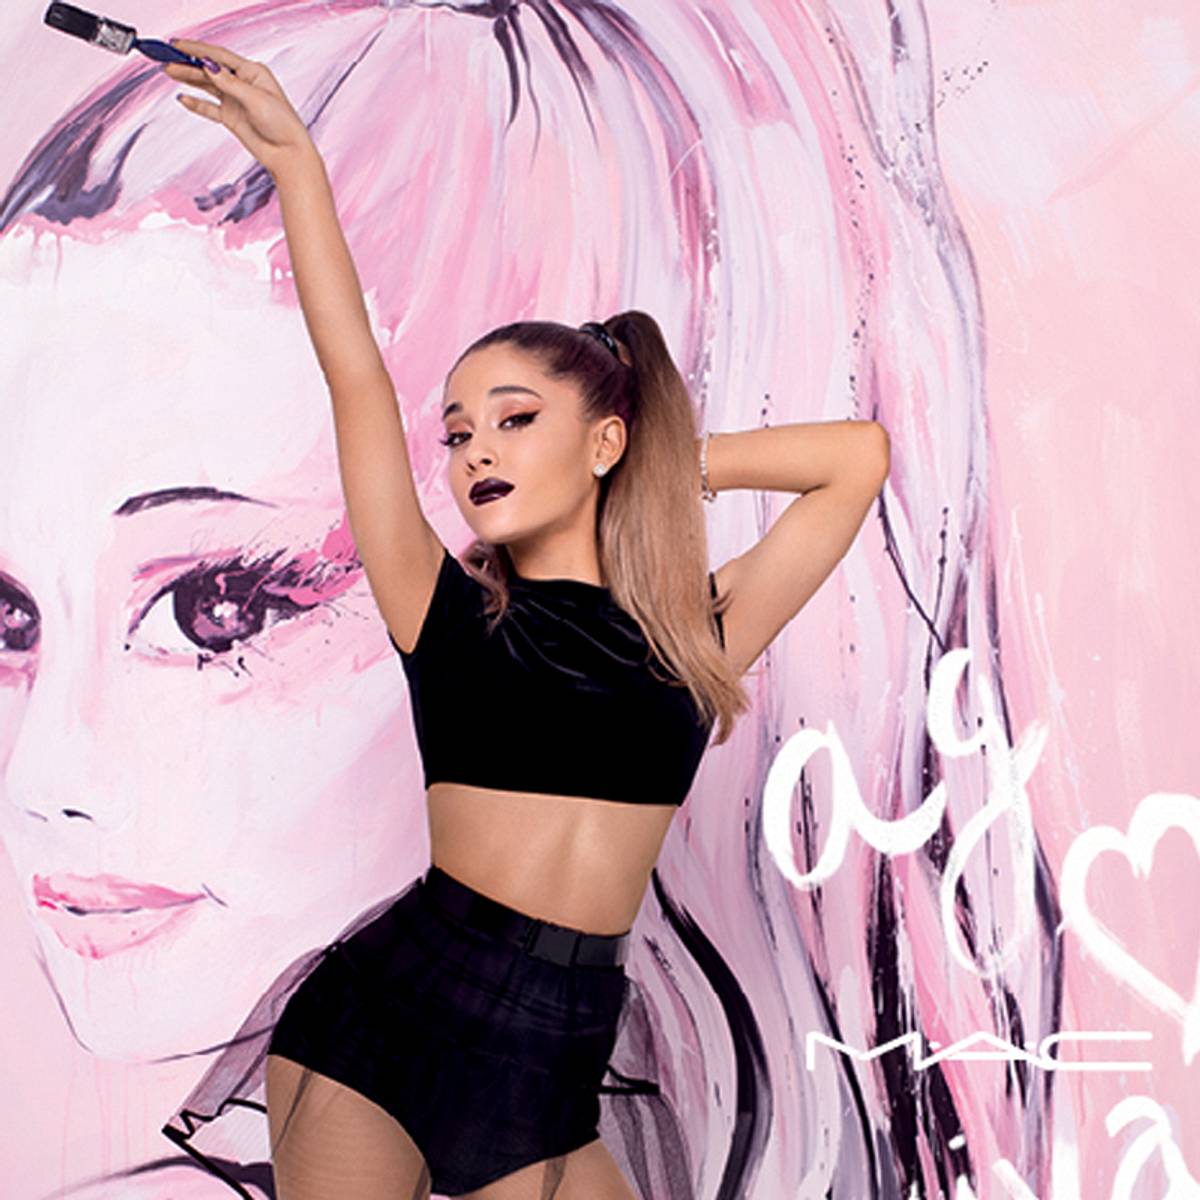 Ariana Grande ist das neue Gesicht für M.A.C Cosmetics